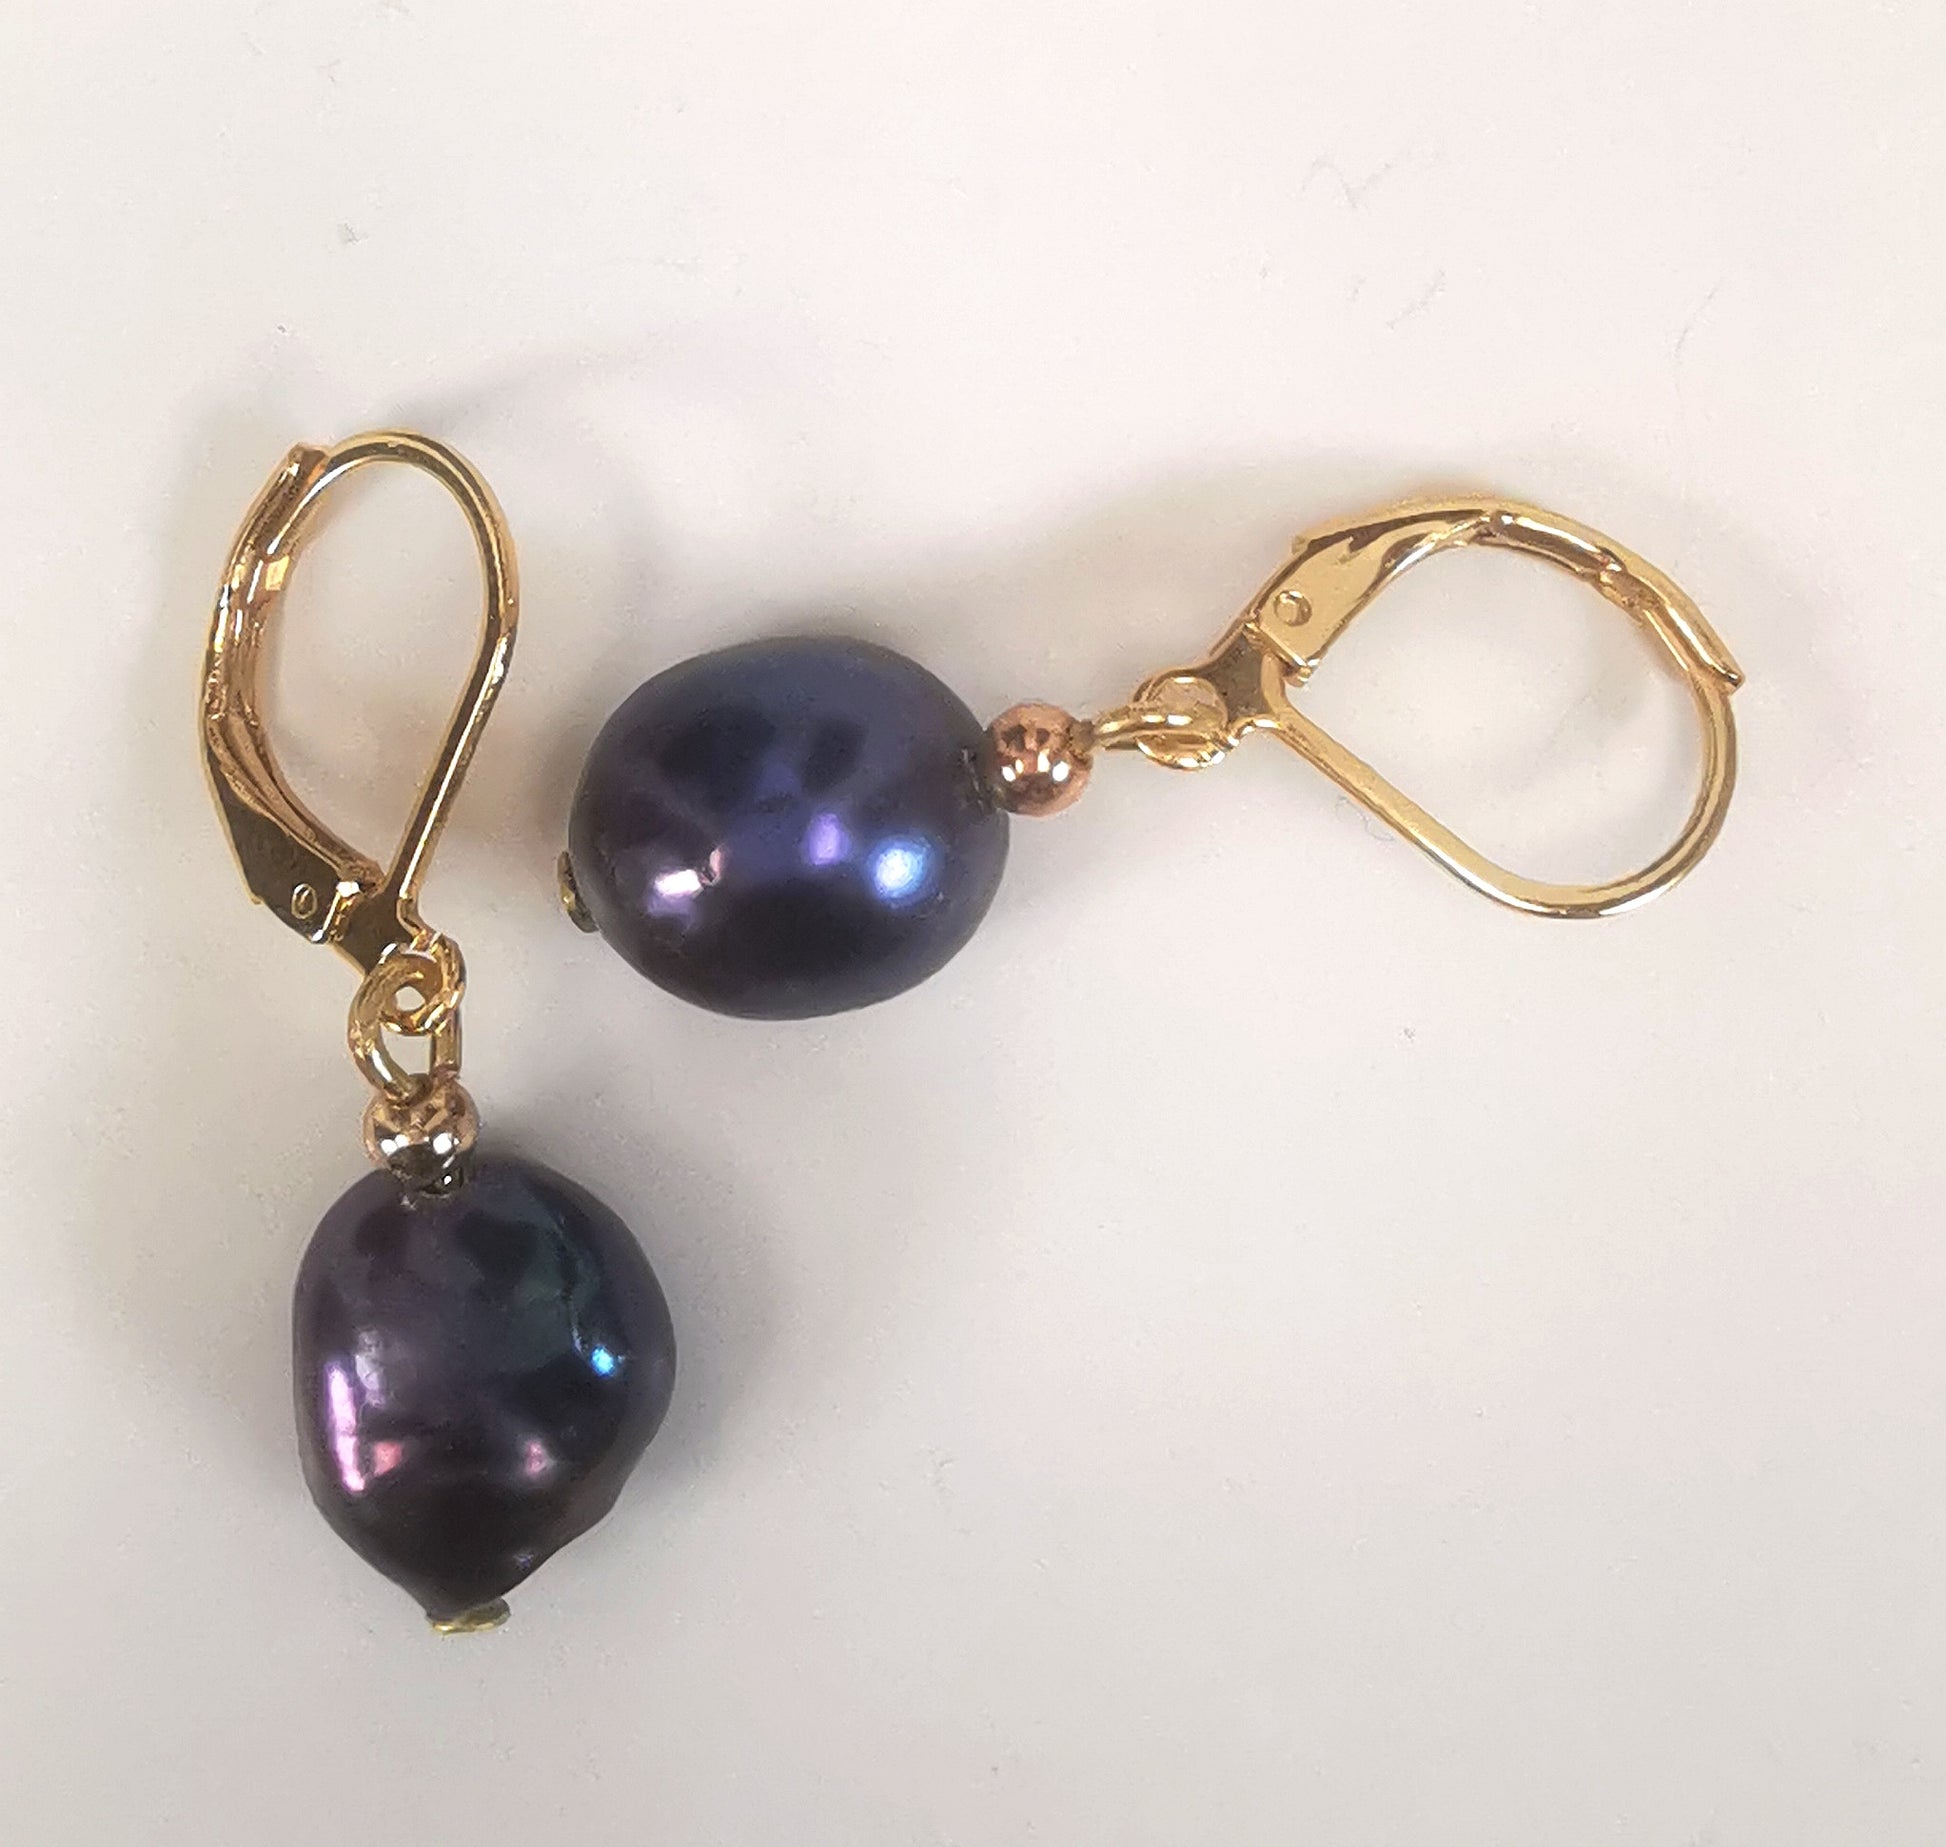 Boucles d'oreilles perles de culture noires baroques 10-12mm montées sur dormeuses plaquées or. Présentées perpendiculairement, celle de gauche verticale perles en bas, celle de droite horizontale, perle à gauche, sur un fond blanc. Vue de dessus.